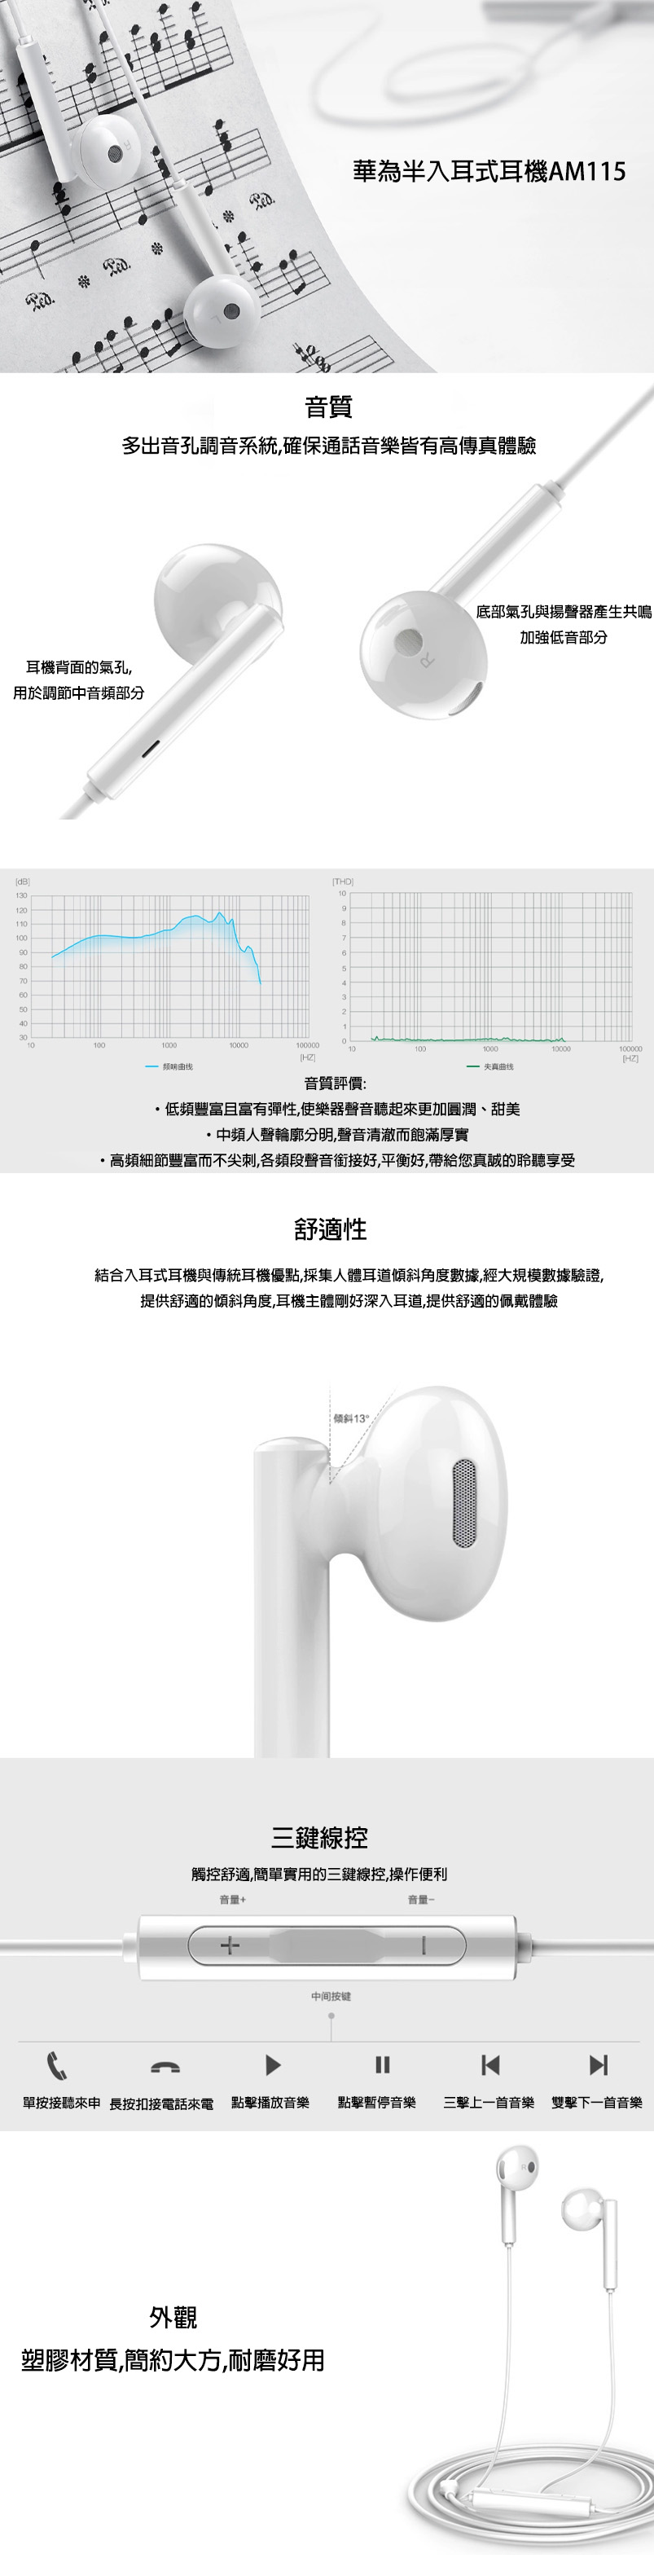 Huawei AM115 半入耳式耳機